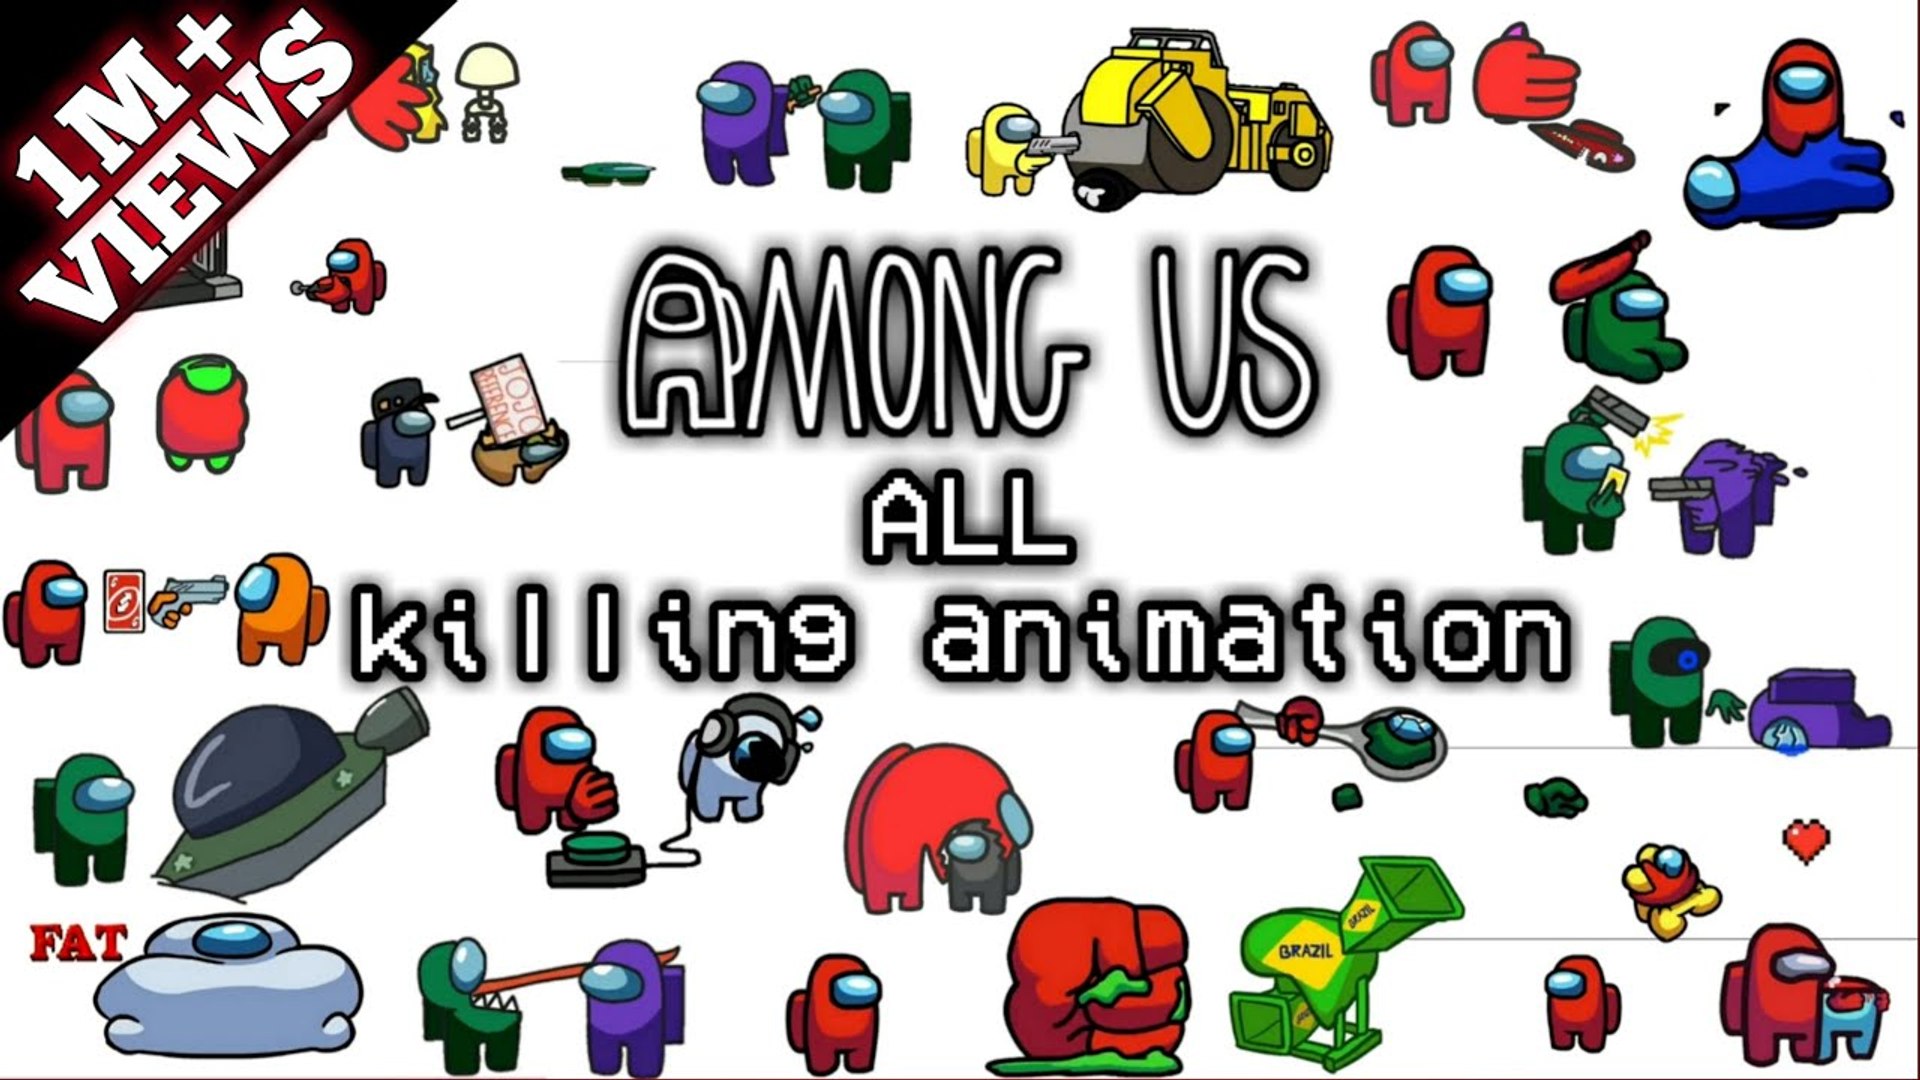 Among Us - Funny Meme Kills Animations 2 